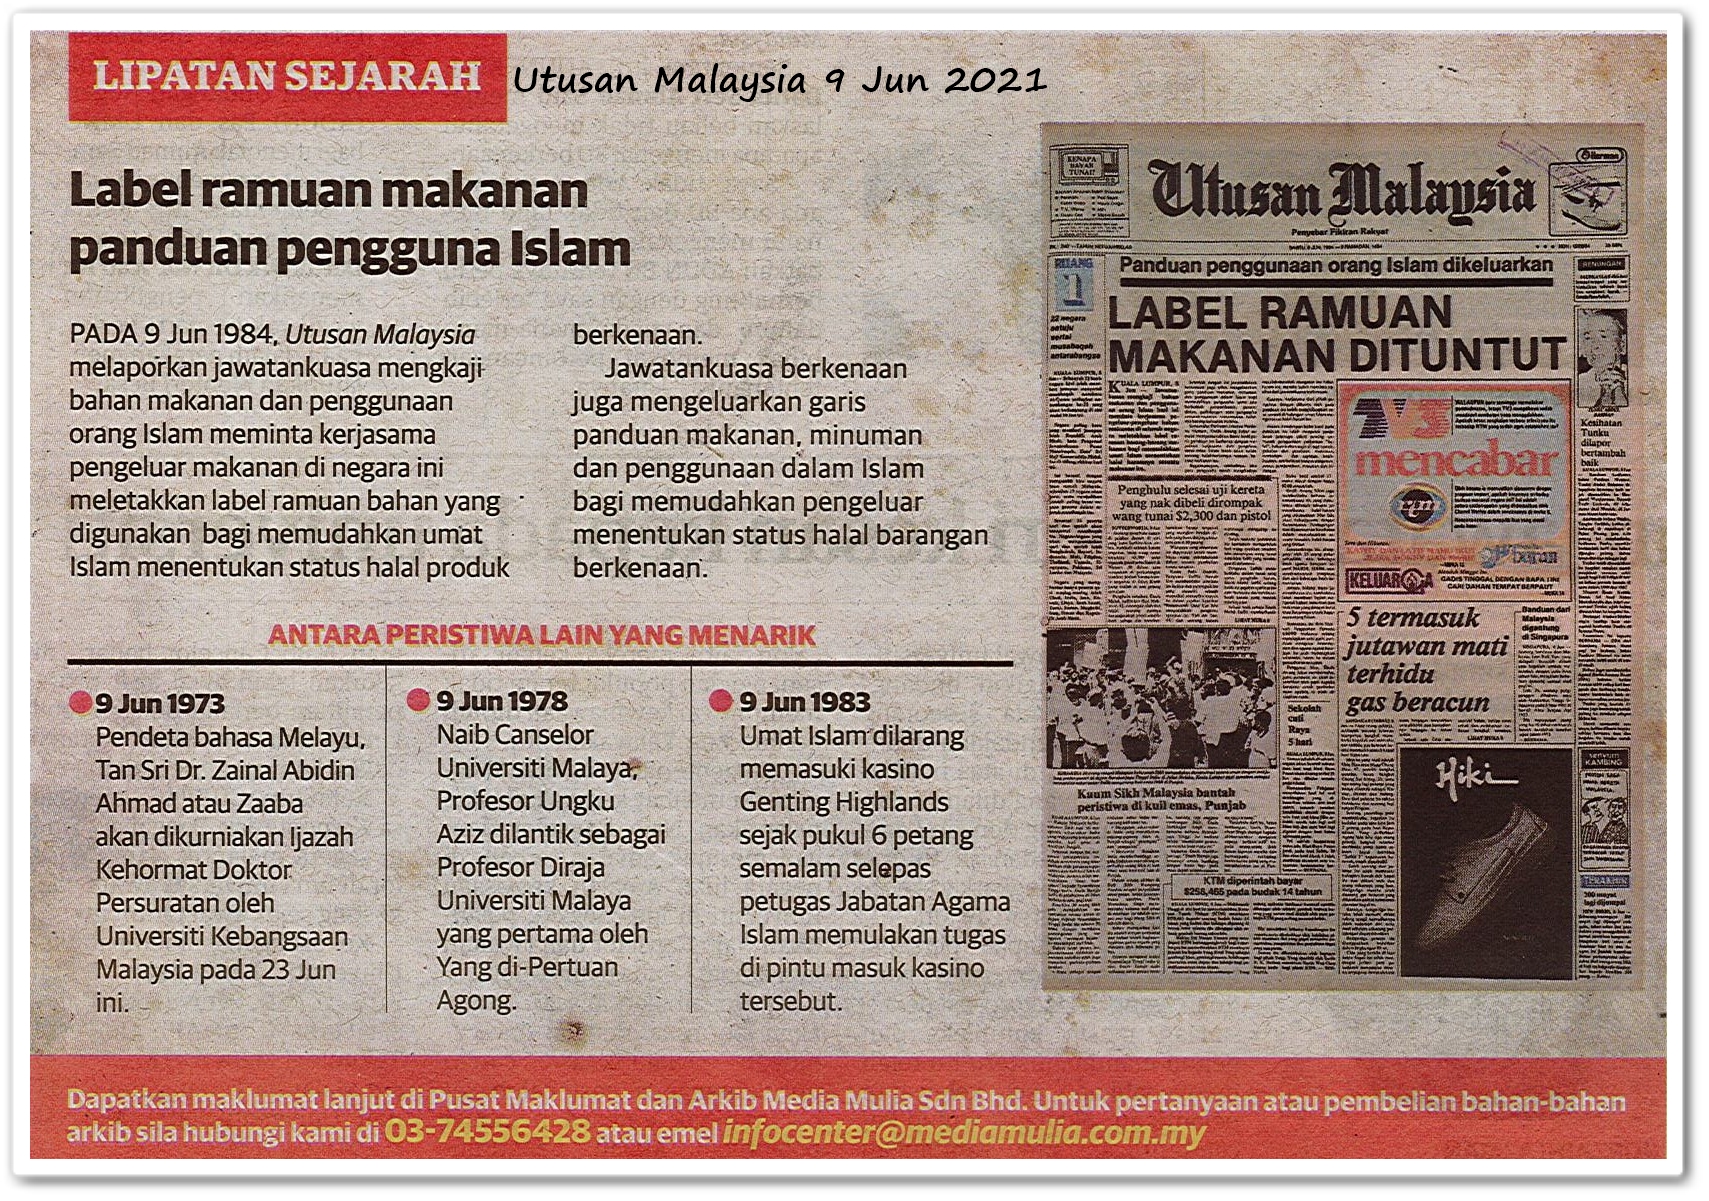 Lipatan sejarah 9 Jun - Keratan akhbar Utusan Malaysia 9 Jun 2021